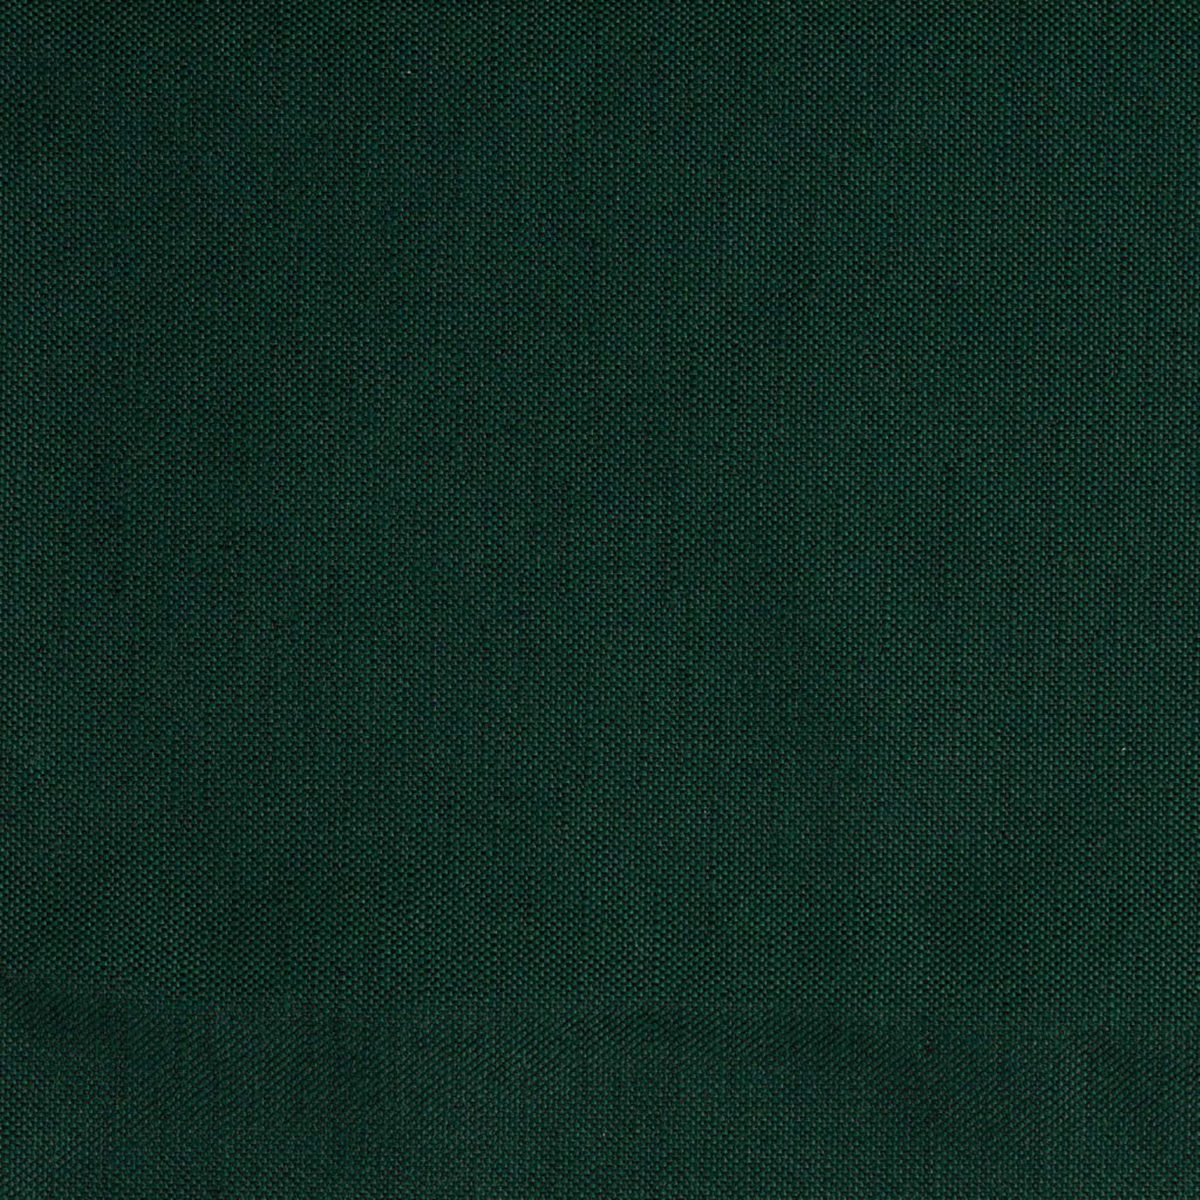 linen mallard dark cushion for croquet teak lounge chair thumbnail image